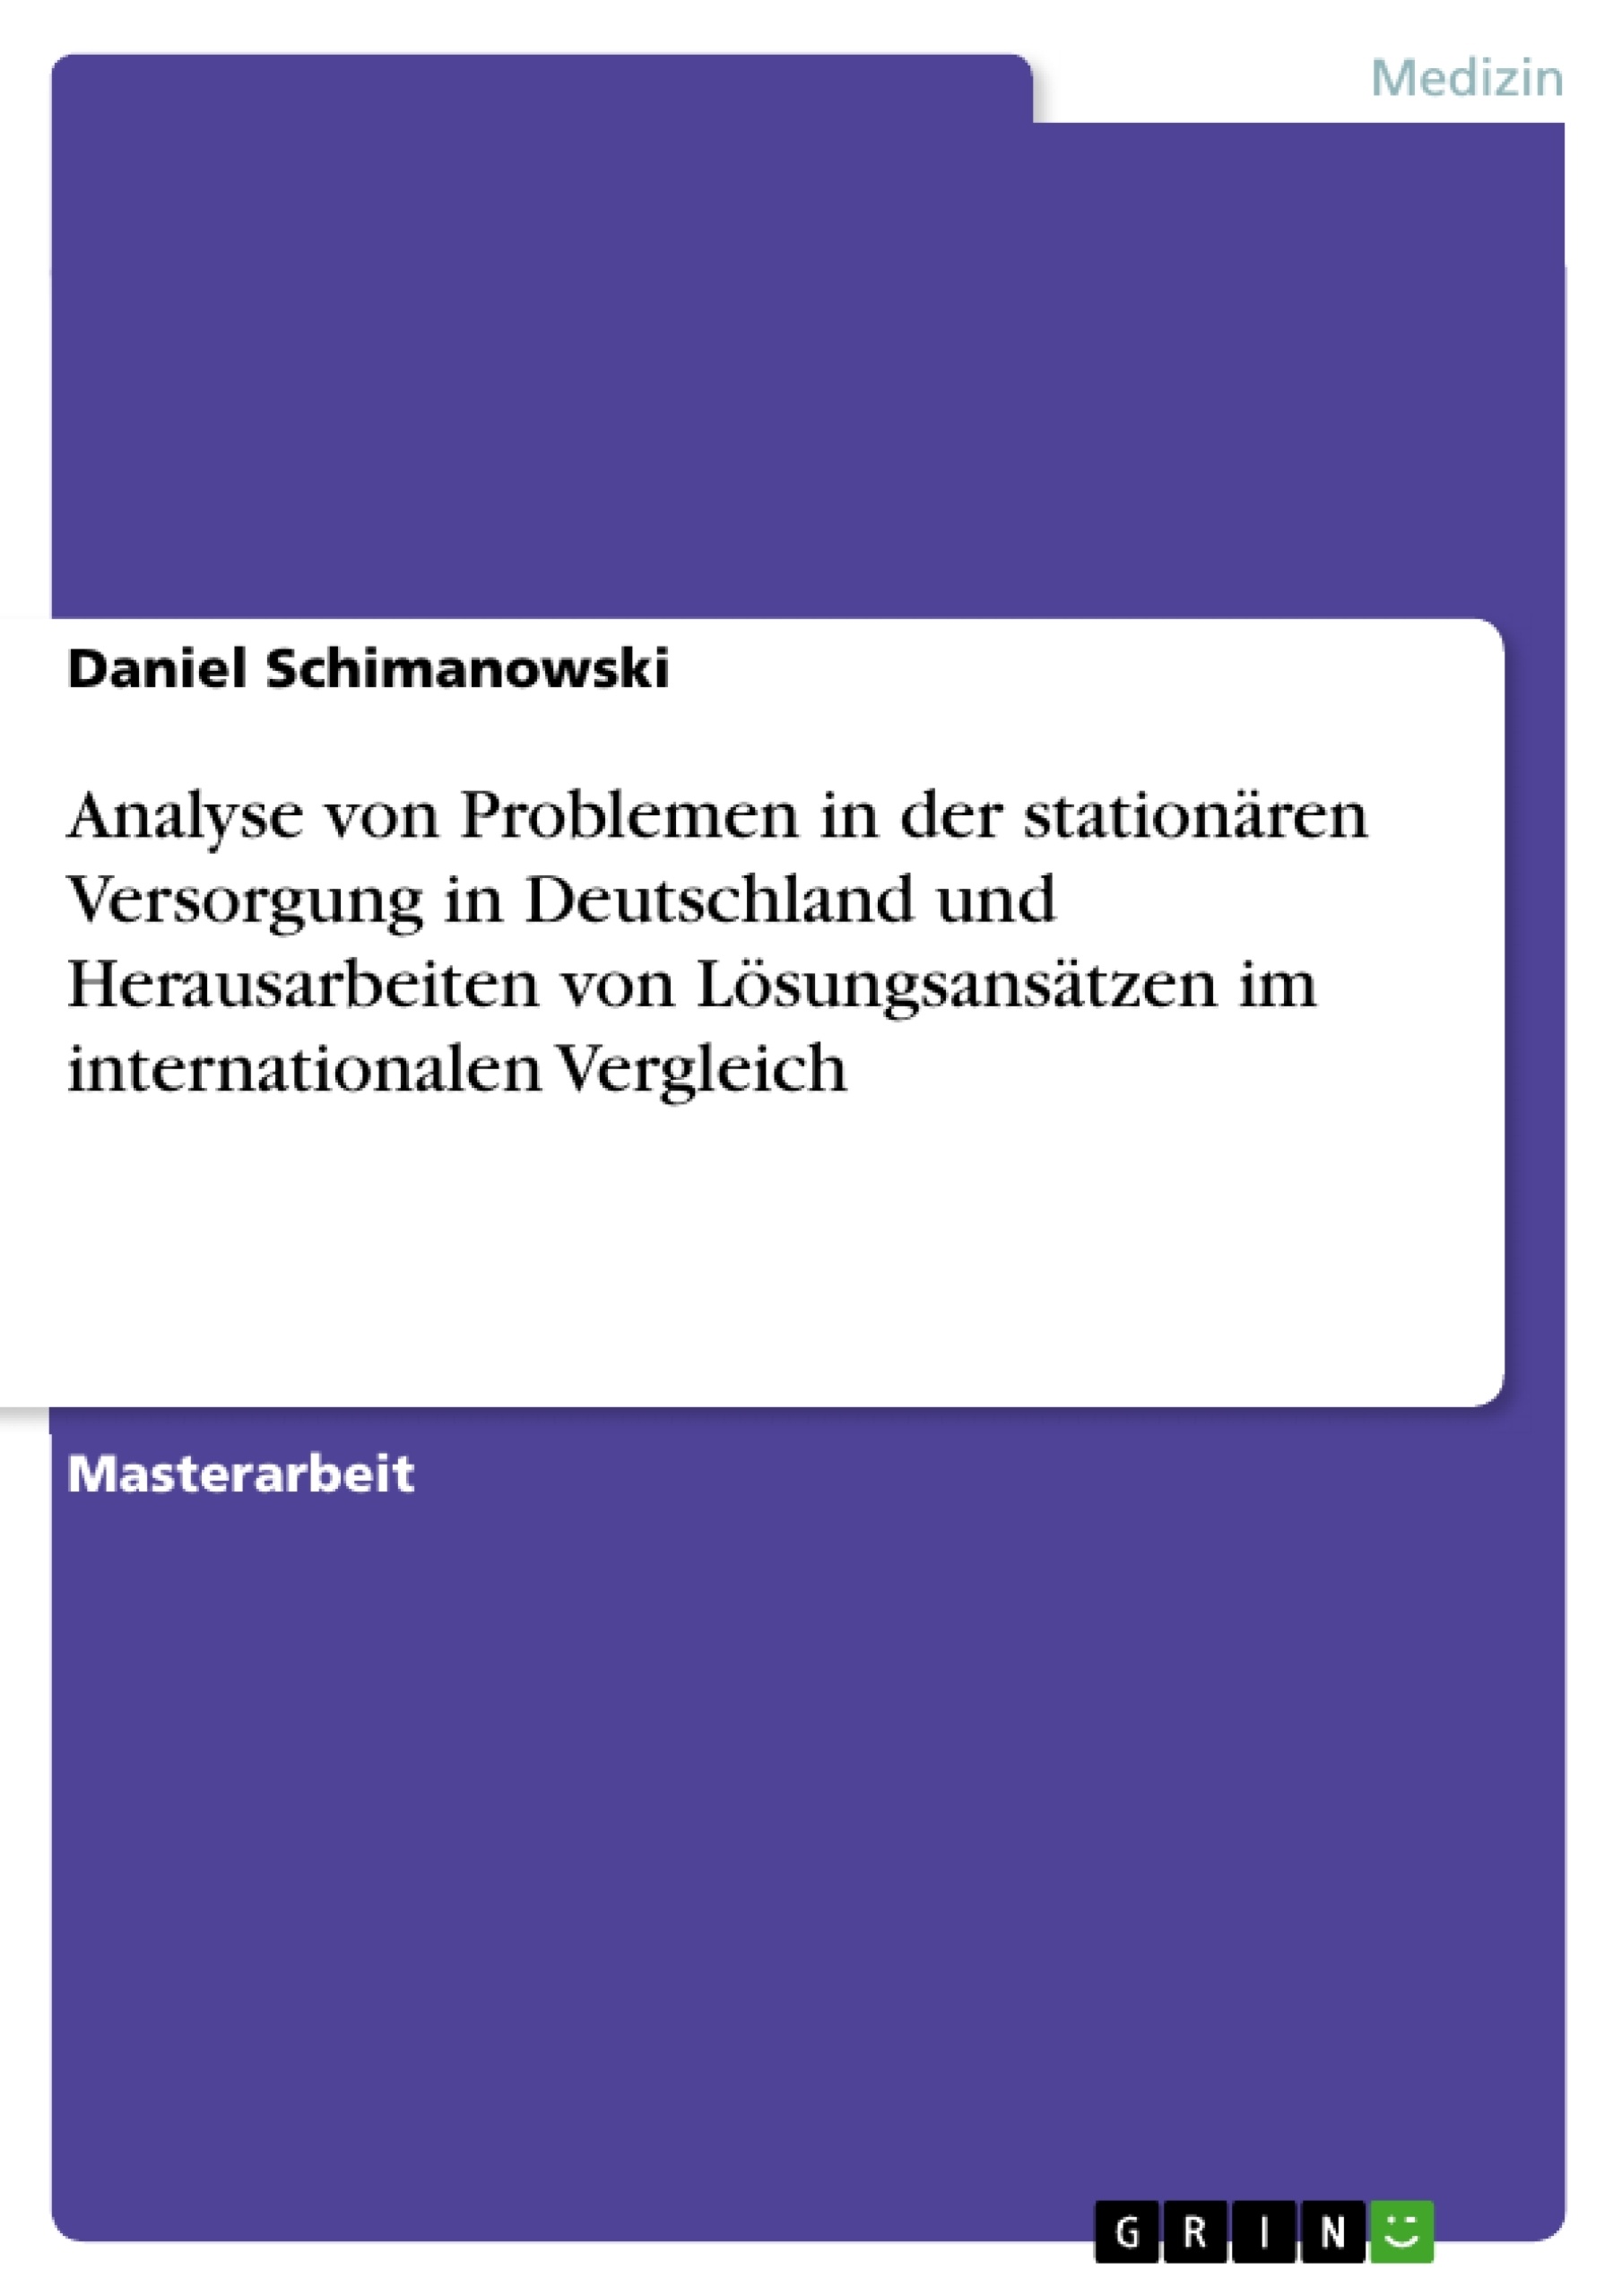 Título: Analyse von Problemen in der stationären Versorgung in Deutschland und Herausarbeiten von Lösungsansätzen im internationalen Vergleich